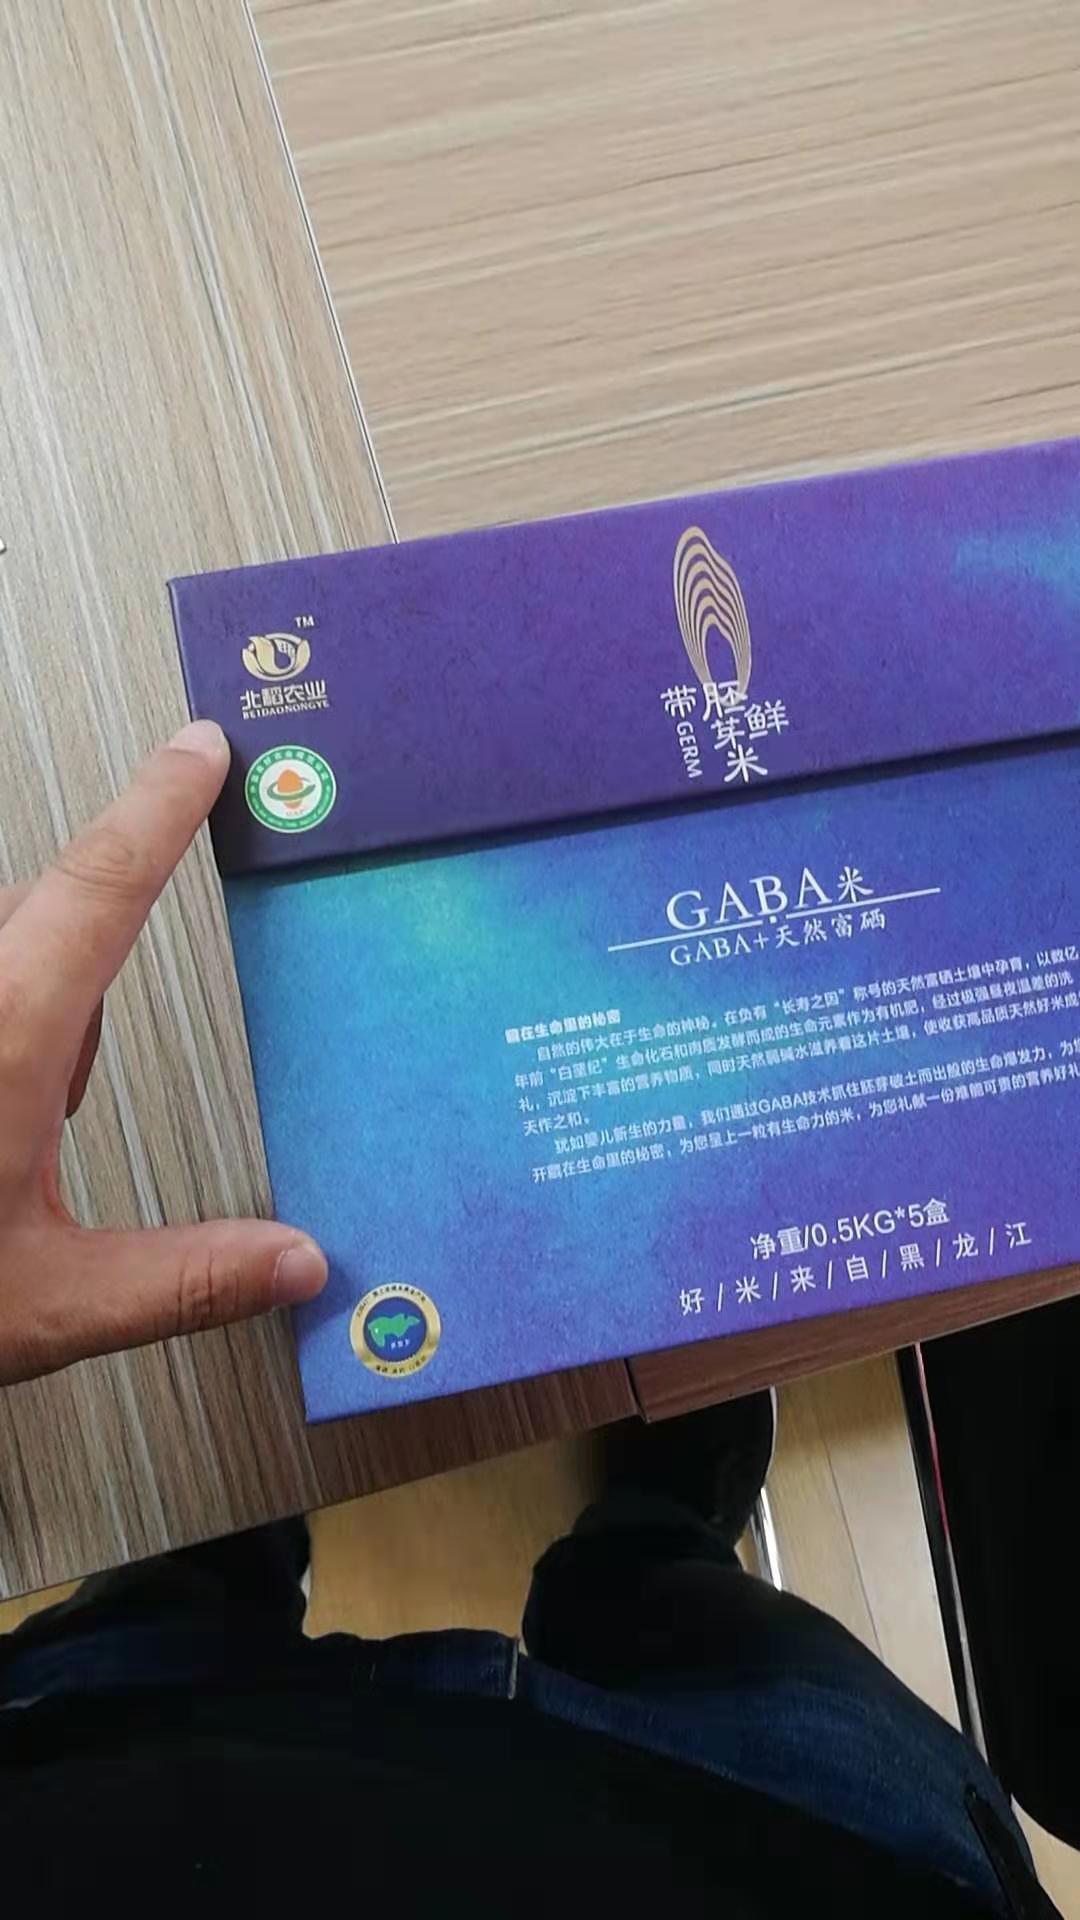  贵州北稻胚芽米品牌包装设计图5